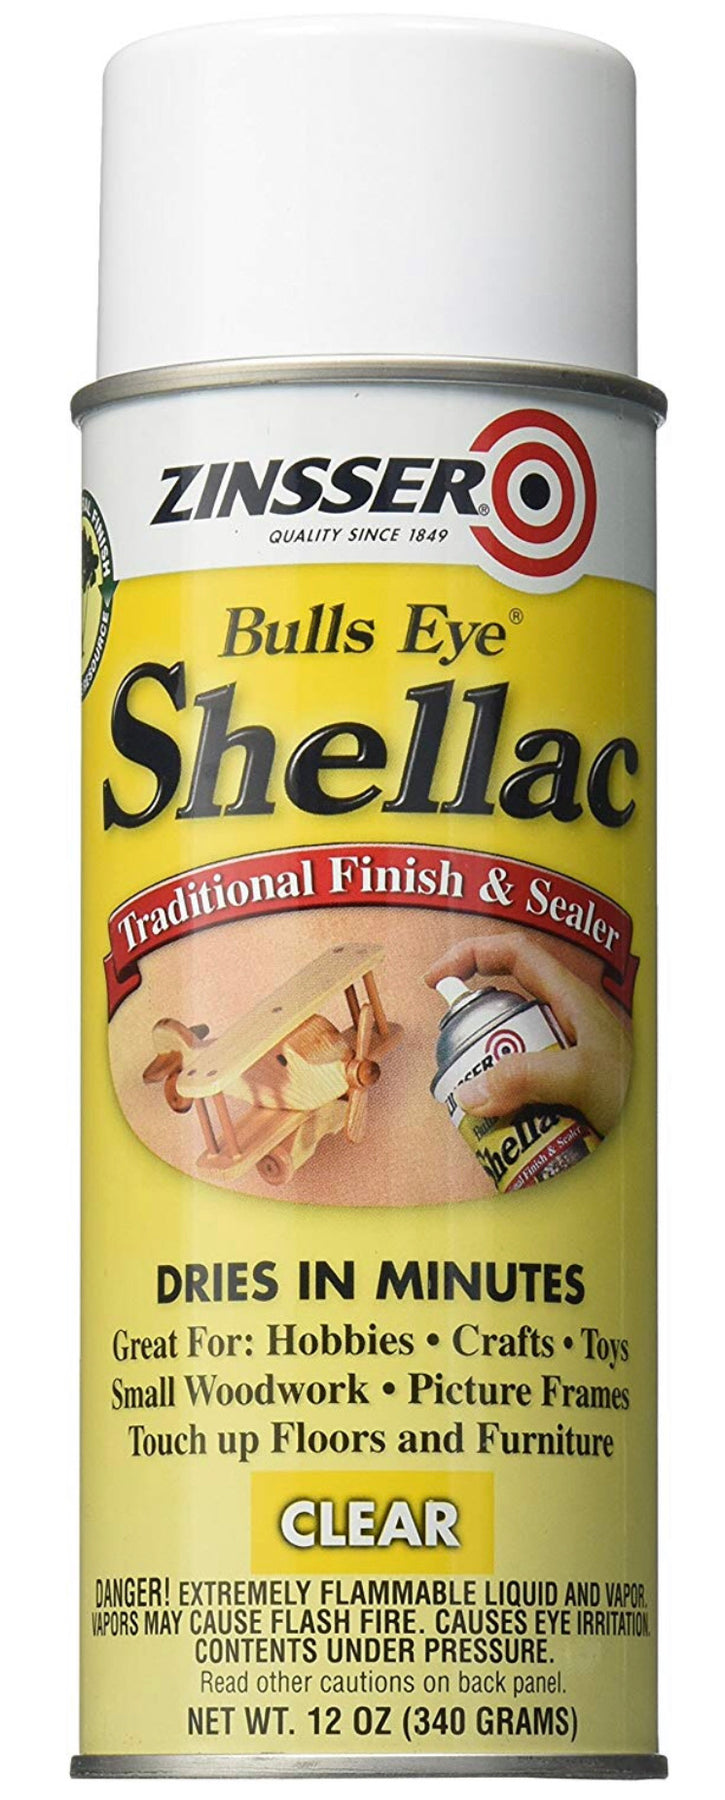 Bulls Eye® Shellac-Clear